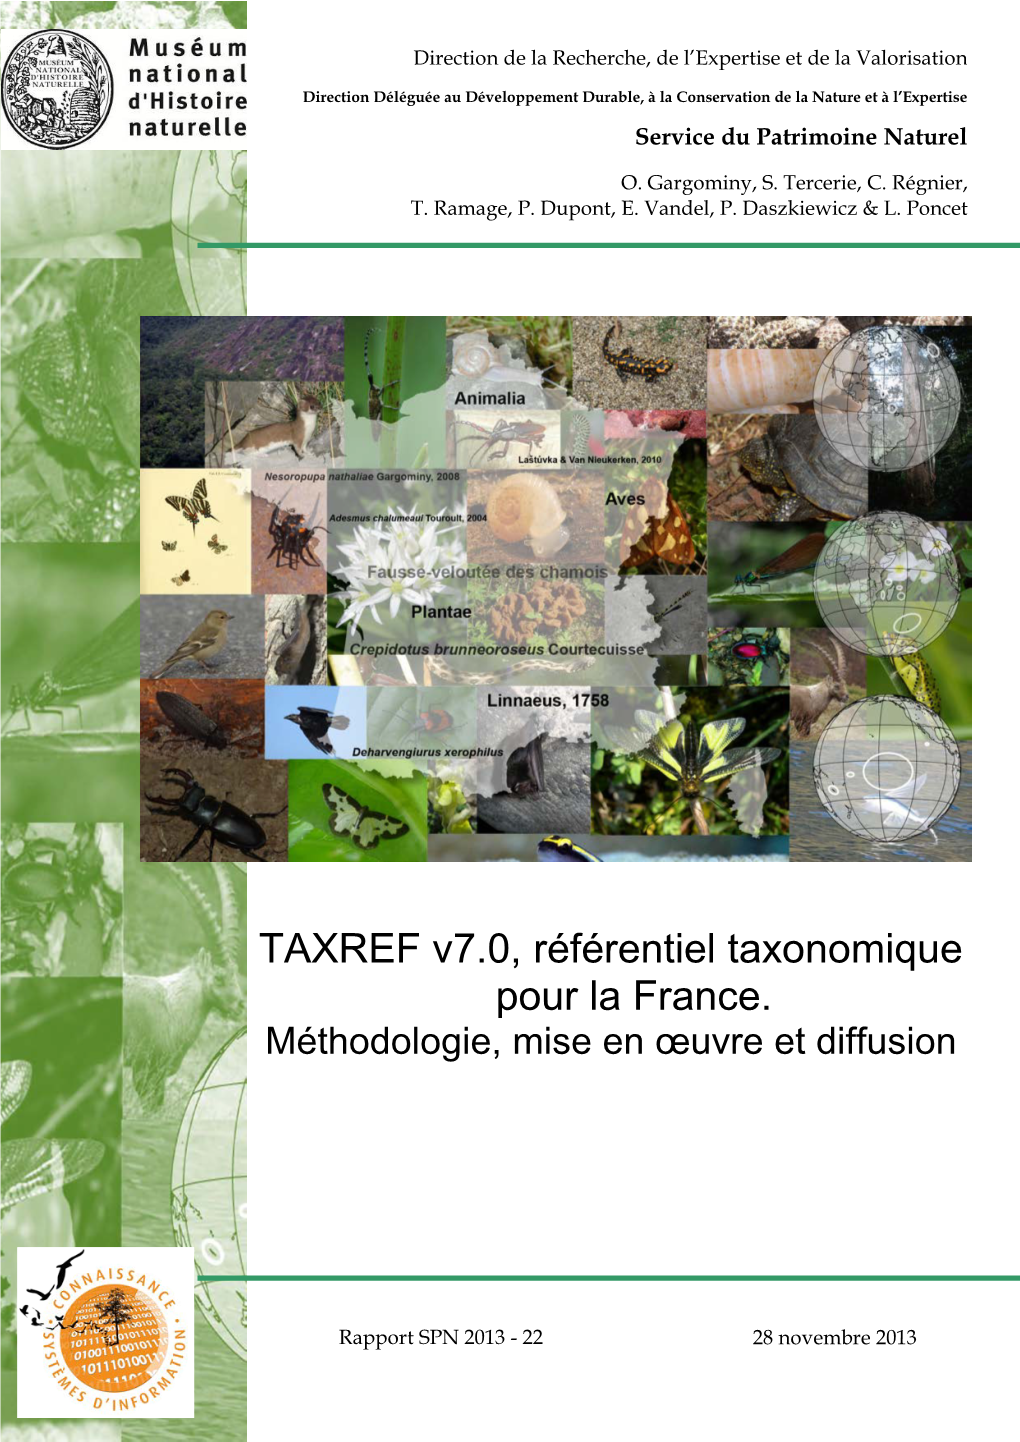 TAXREF V6.0, Référentiel Taxonomique Pour La France : Mise En Œuvre Et Diffusion